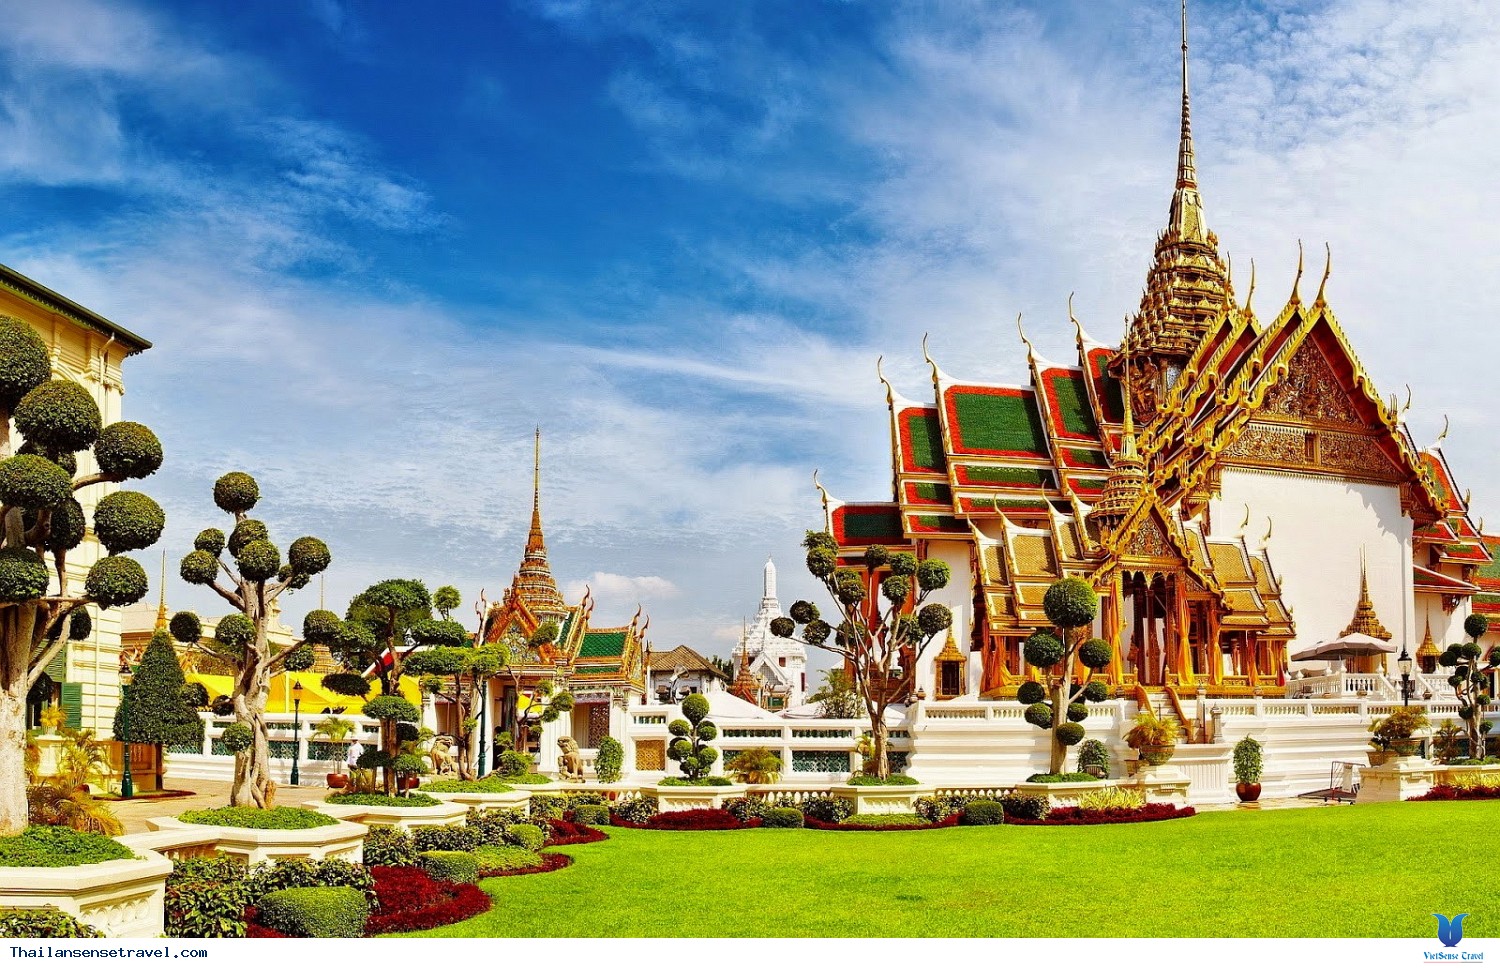 Tham quan chi tiết hoàng cung Thái Lan - Viet Traveler